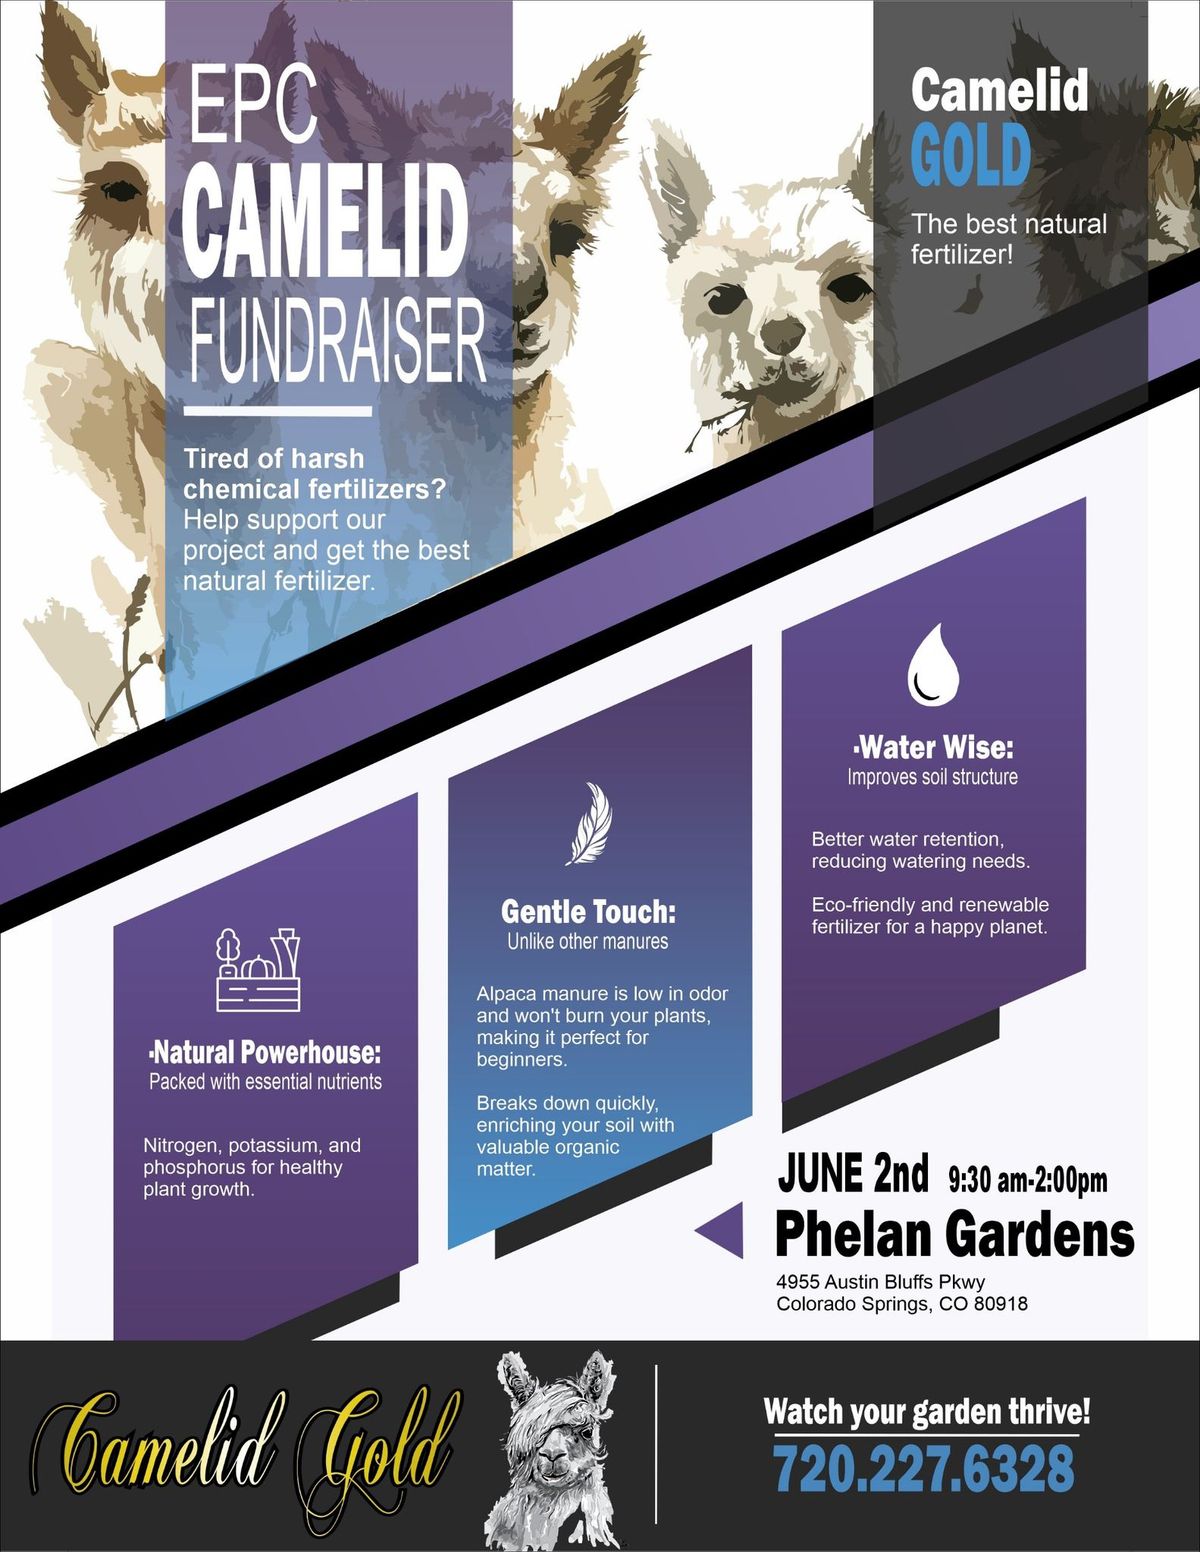 Camelid Gold Natural Fertilizer Fundraiser